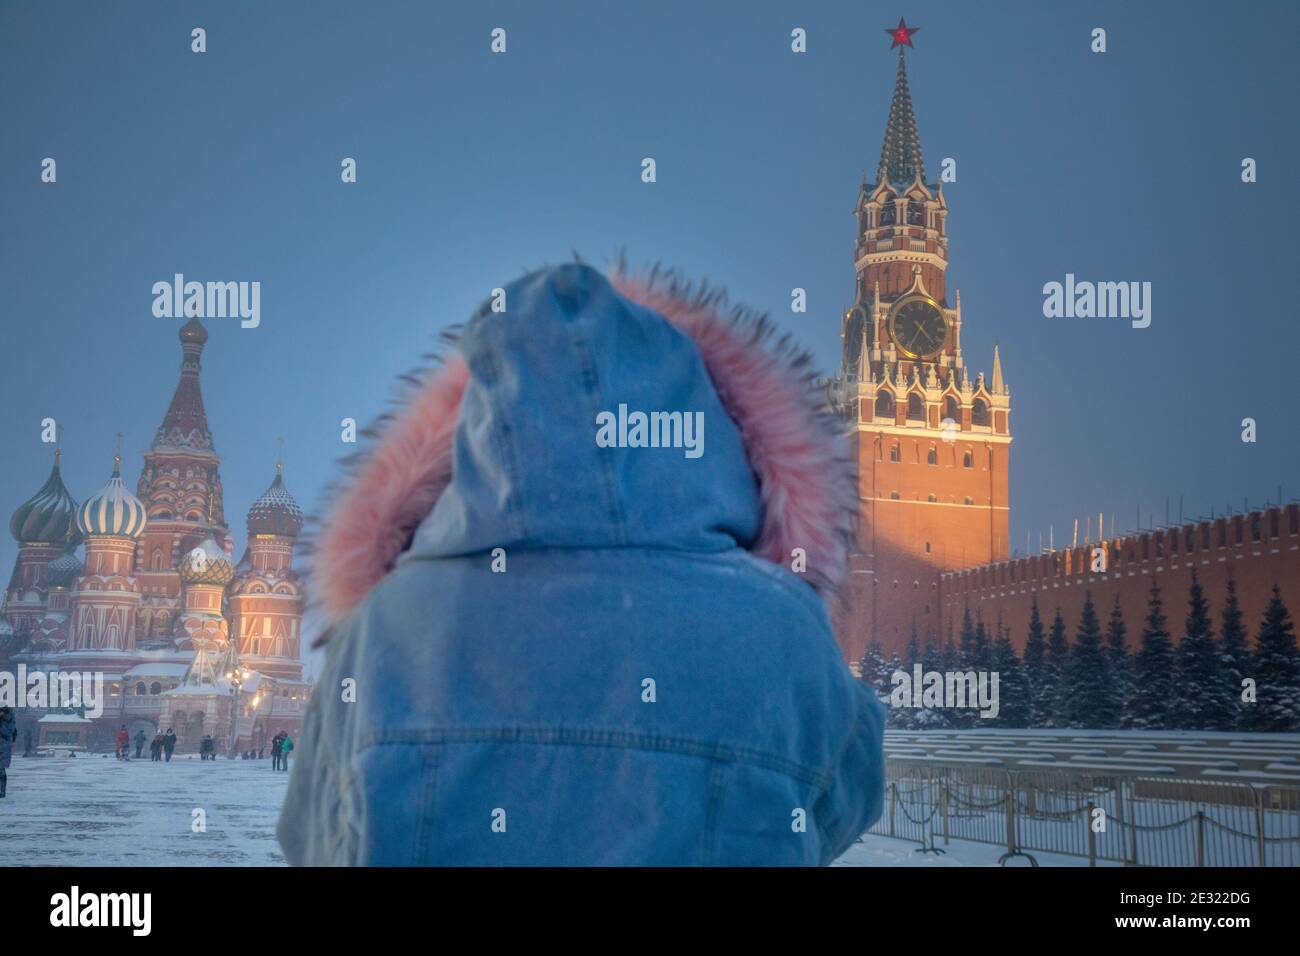 Moscou, Russie. 16 janvier, 2021 personnes marchent sur la place Rouge en arrière-plan de la tour Spasskaya du Kremlin de Moscou et de la cathédrale Saint-Basile pendant la chute de température à -15°C (5°F) et la chute de neige dans le centre de Moscou, Russie Banque D'Images